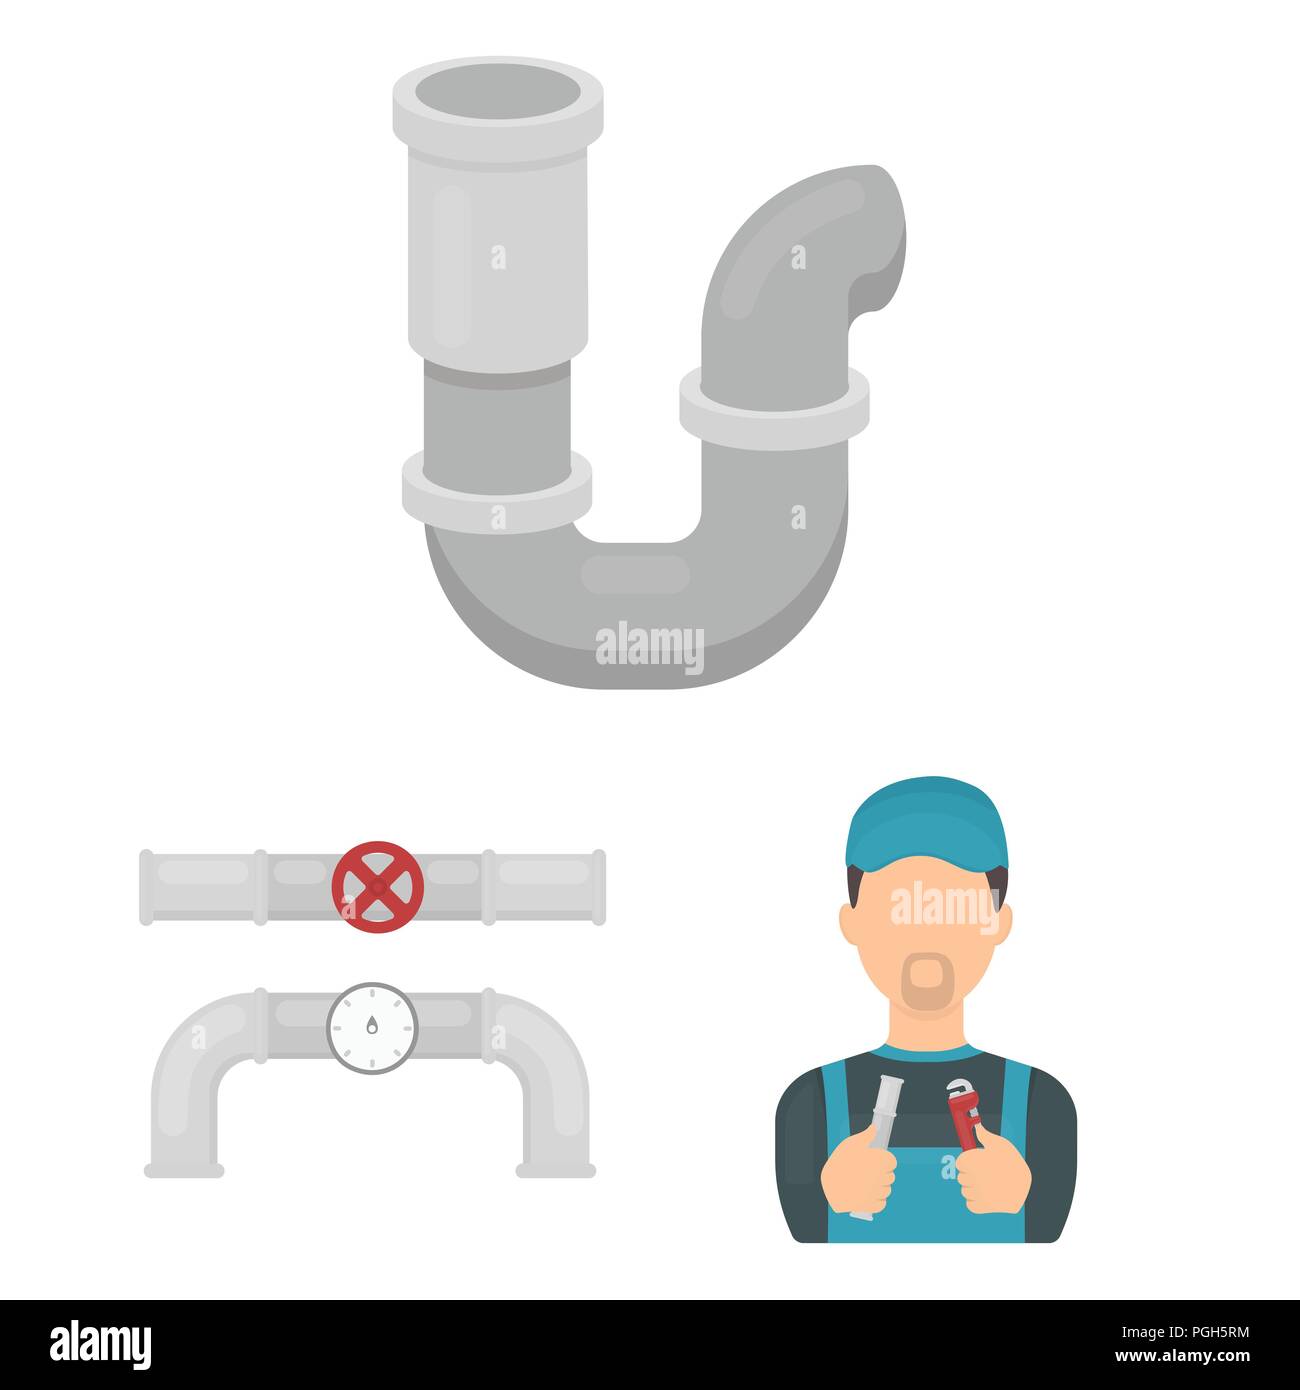 Set plumbing fittings Stock Photo - Alamy